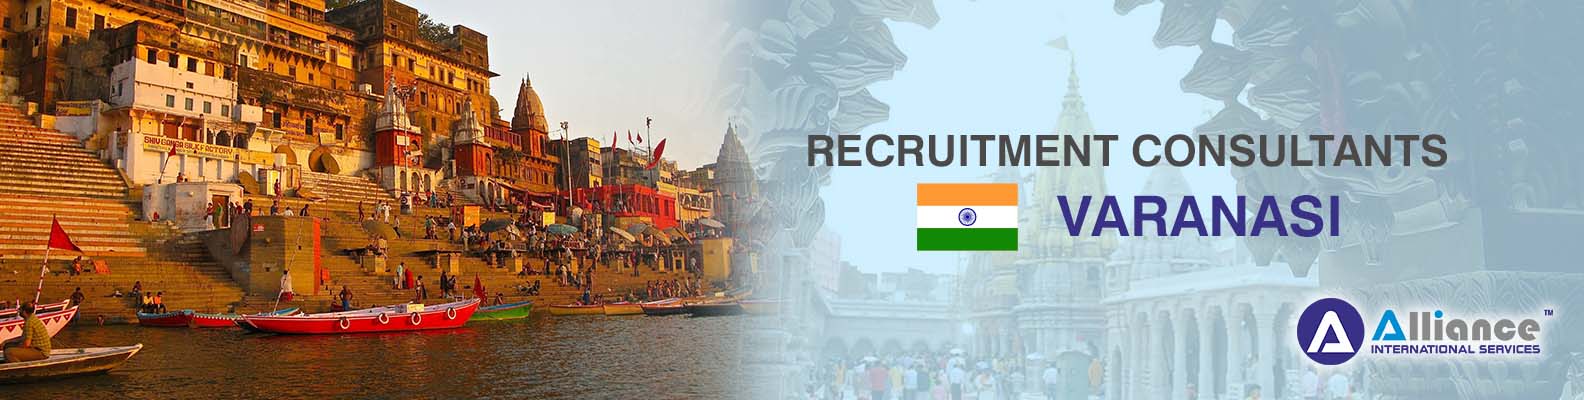 Recruitment Consultants Varanasi